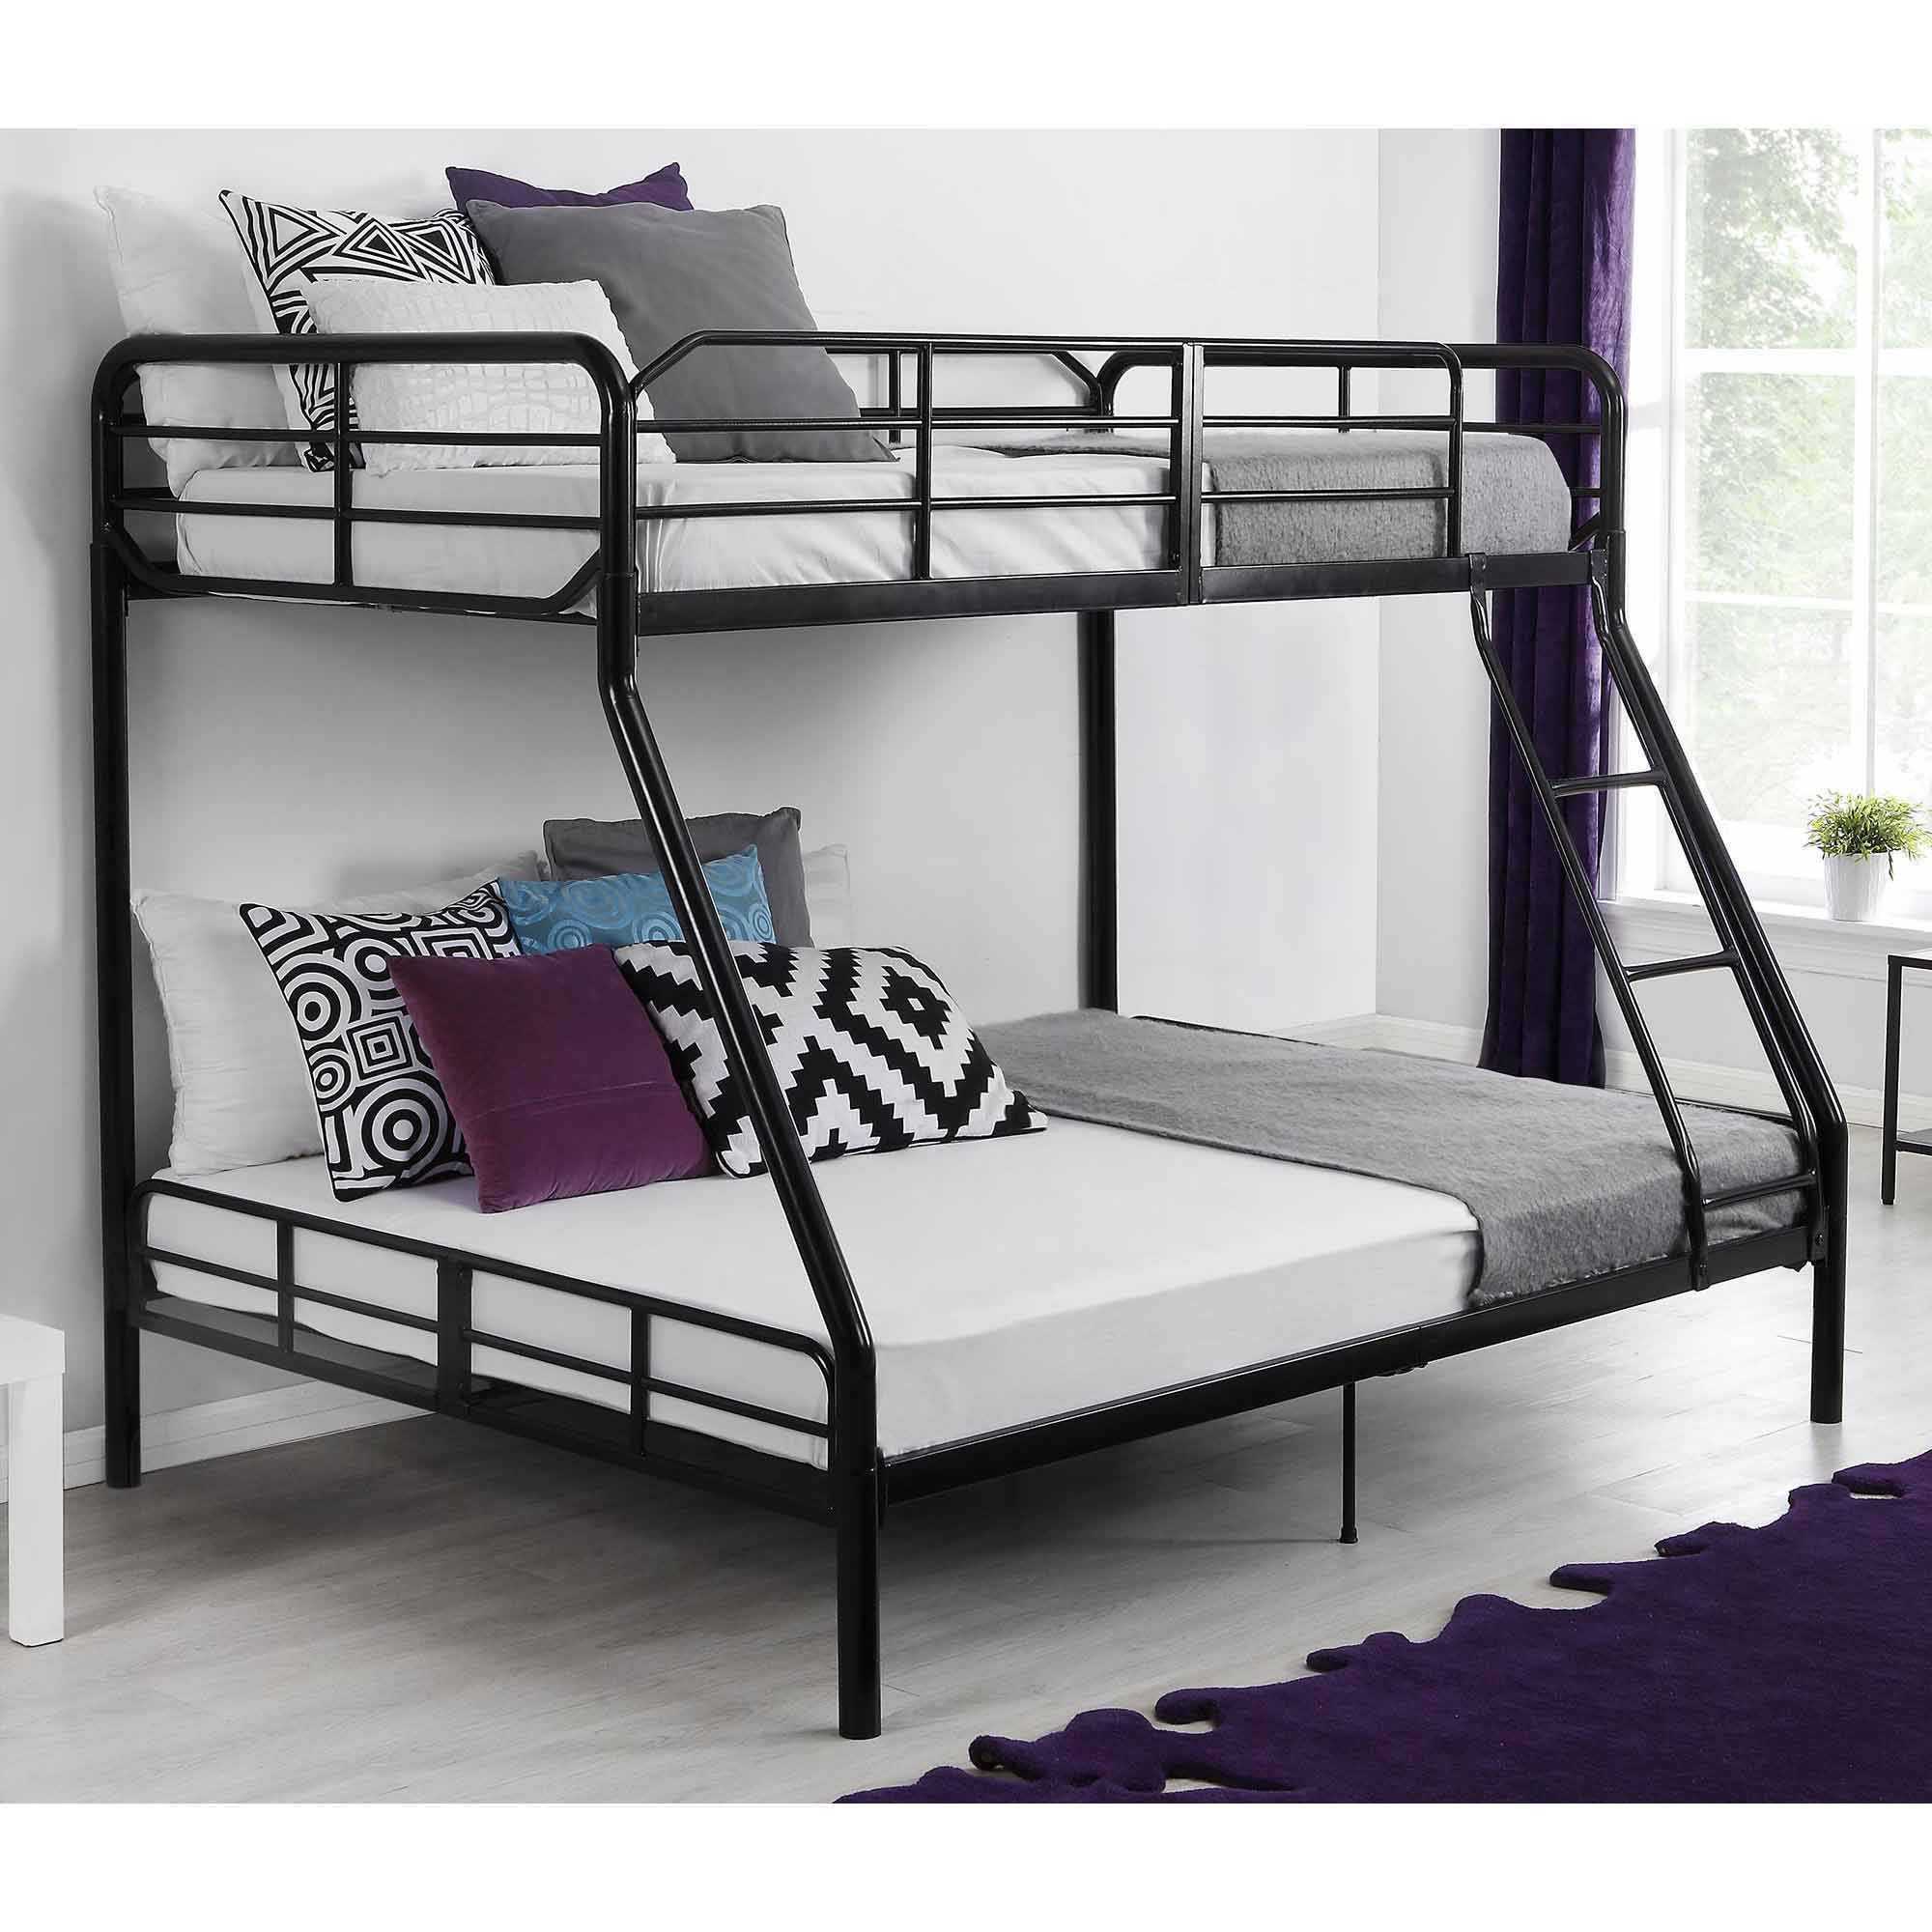 Двухъярусная кровать – особенности выбора детской кровати и лучшие идеи по расстановке кроватей (110 фото)